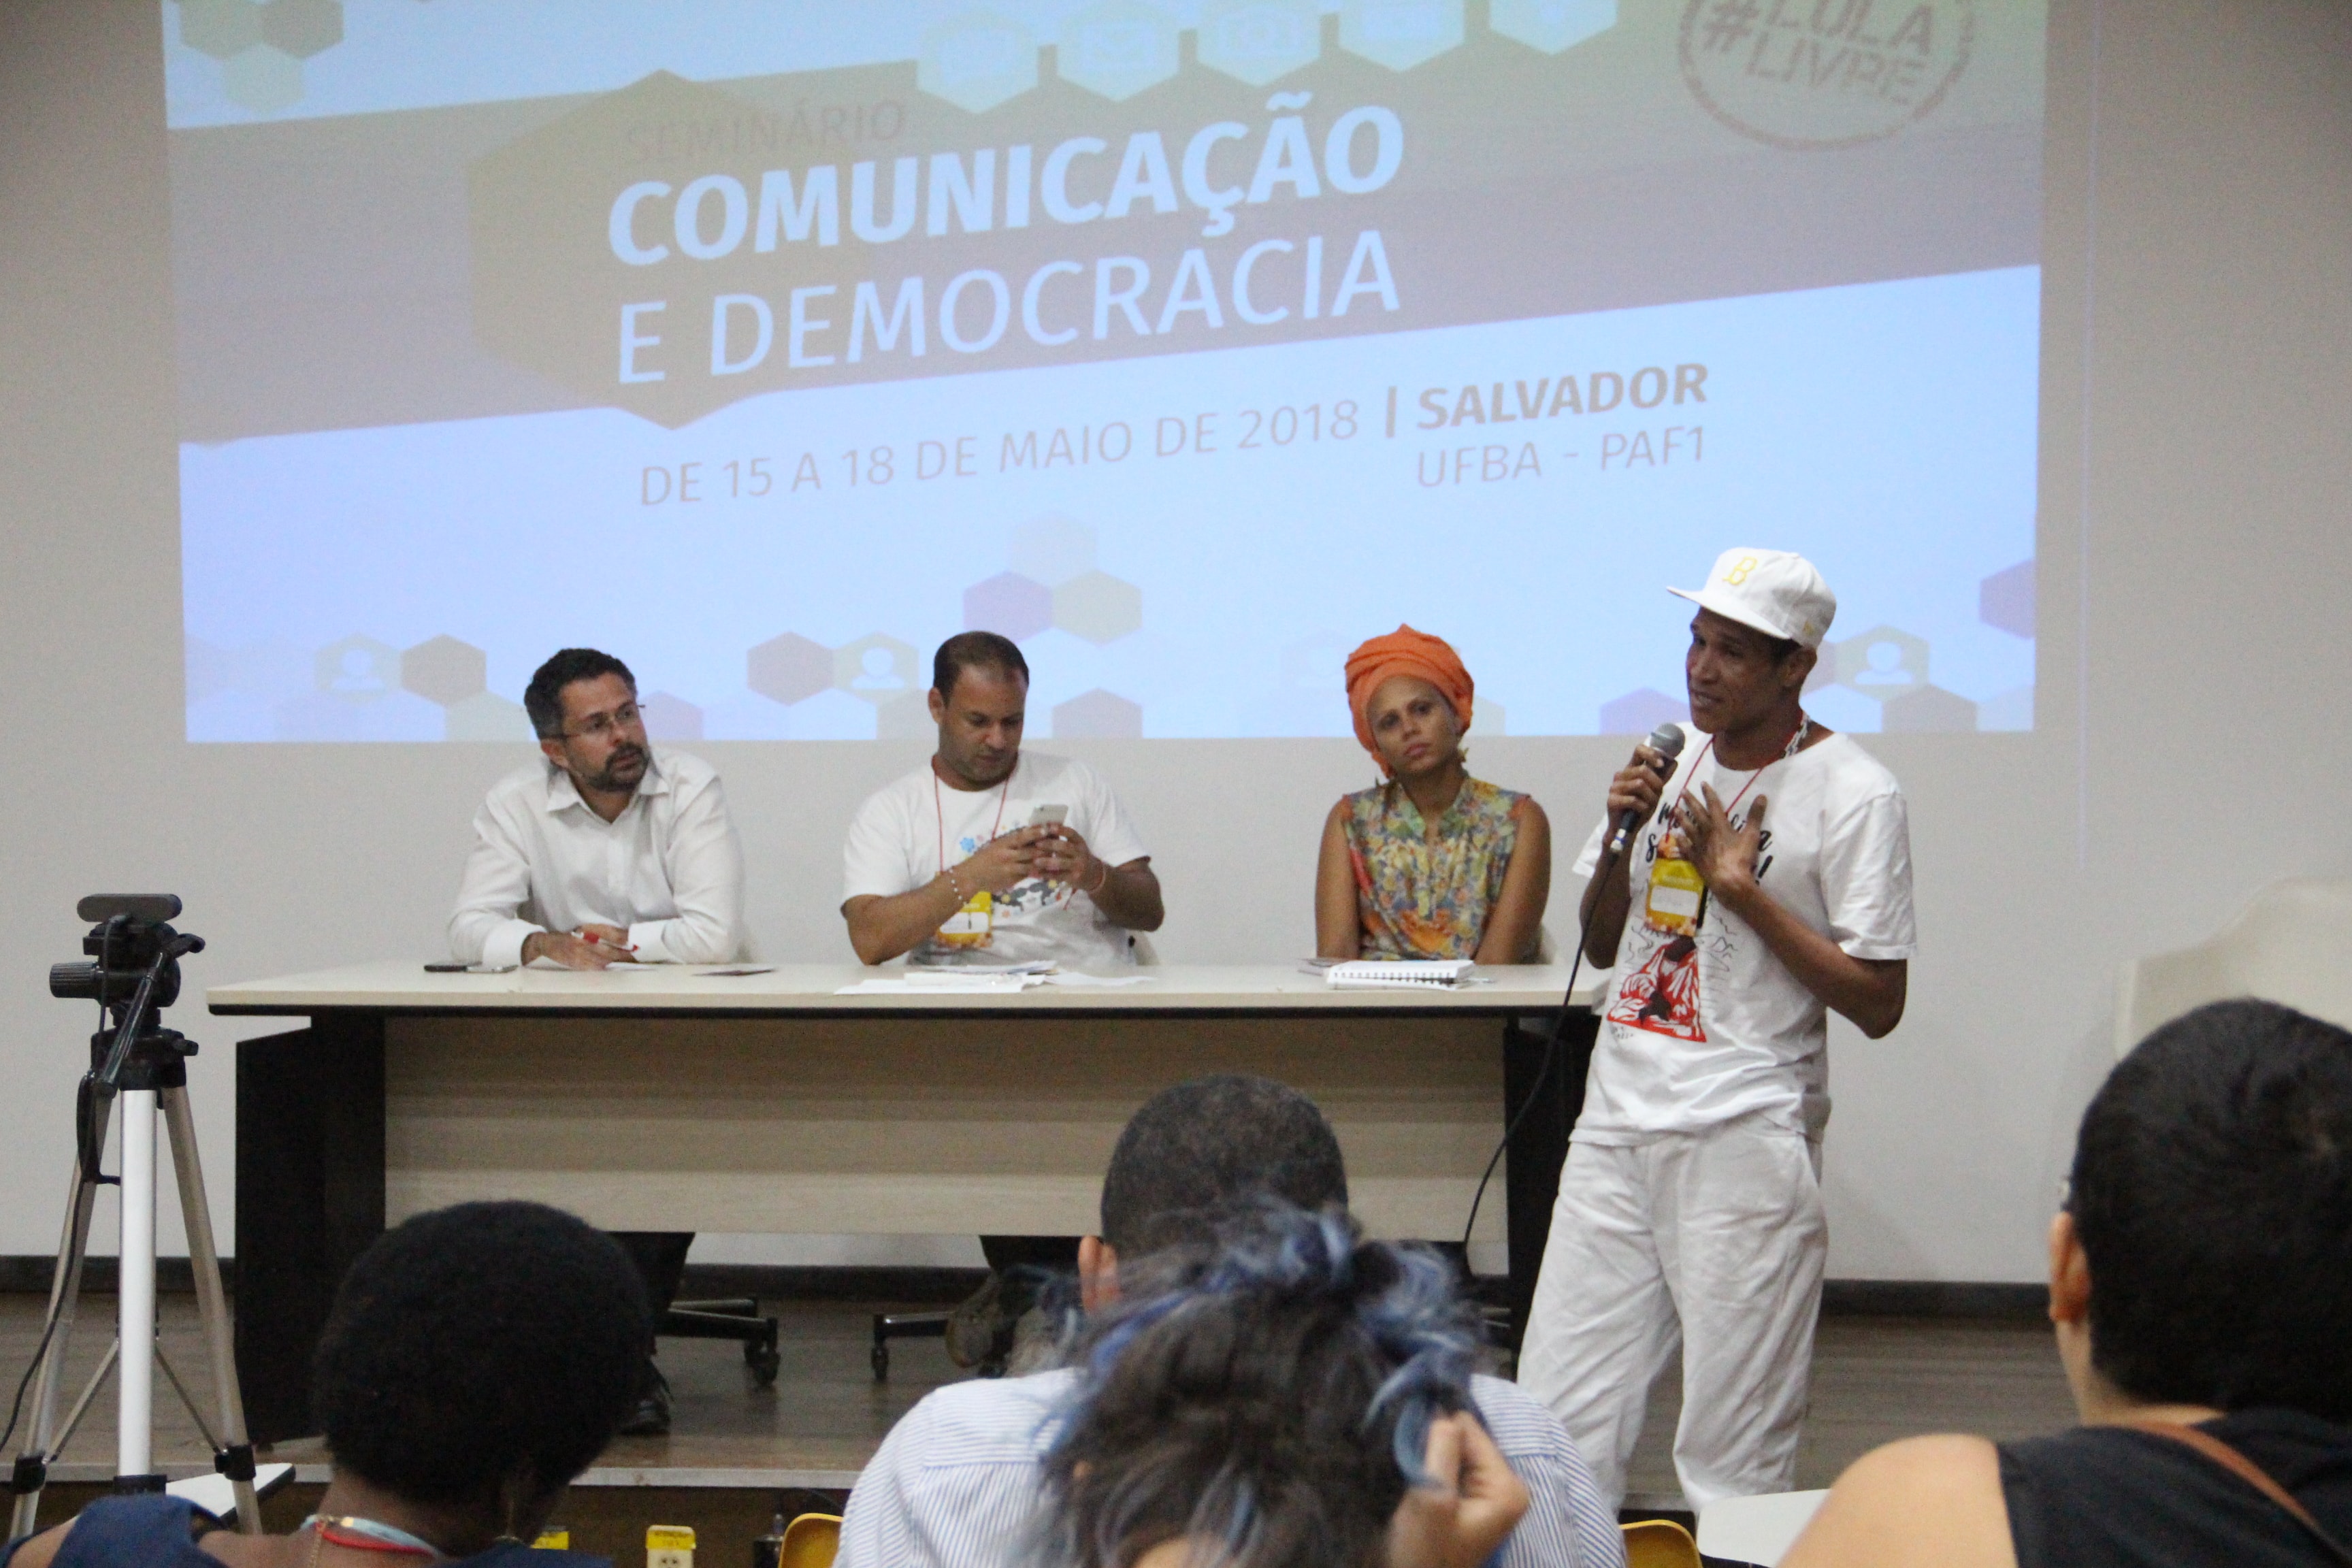 Seminário discutiu outra comunicação possível na Bahia